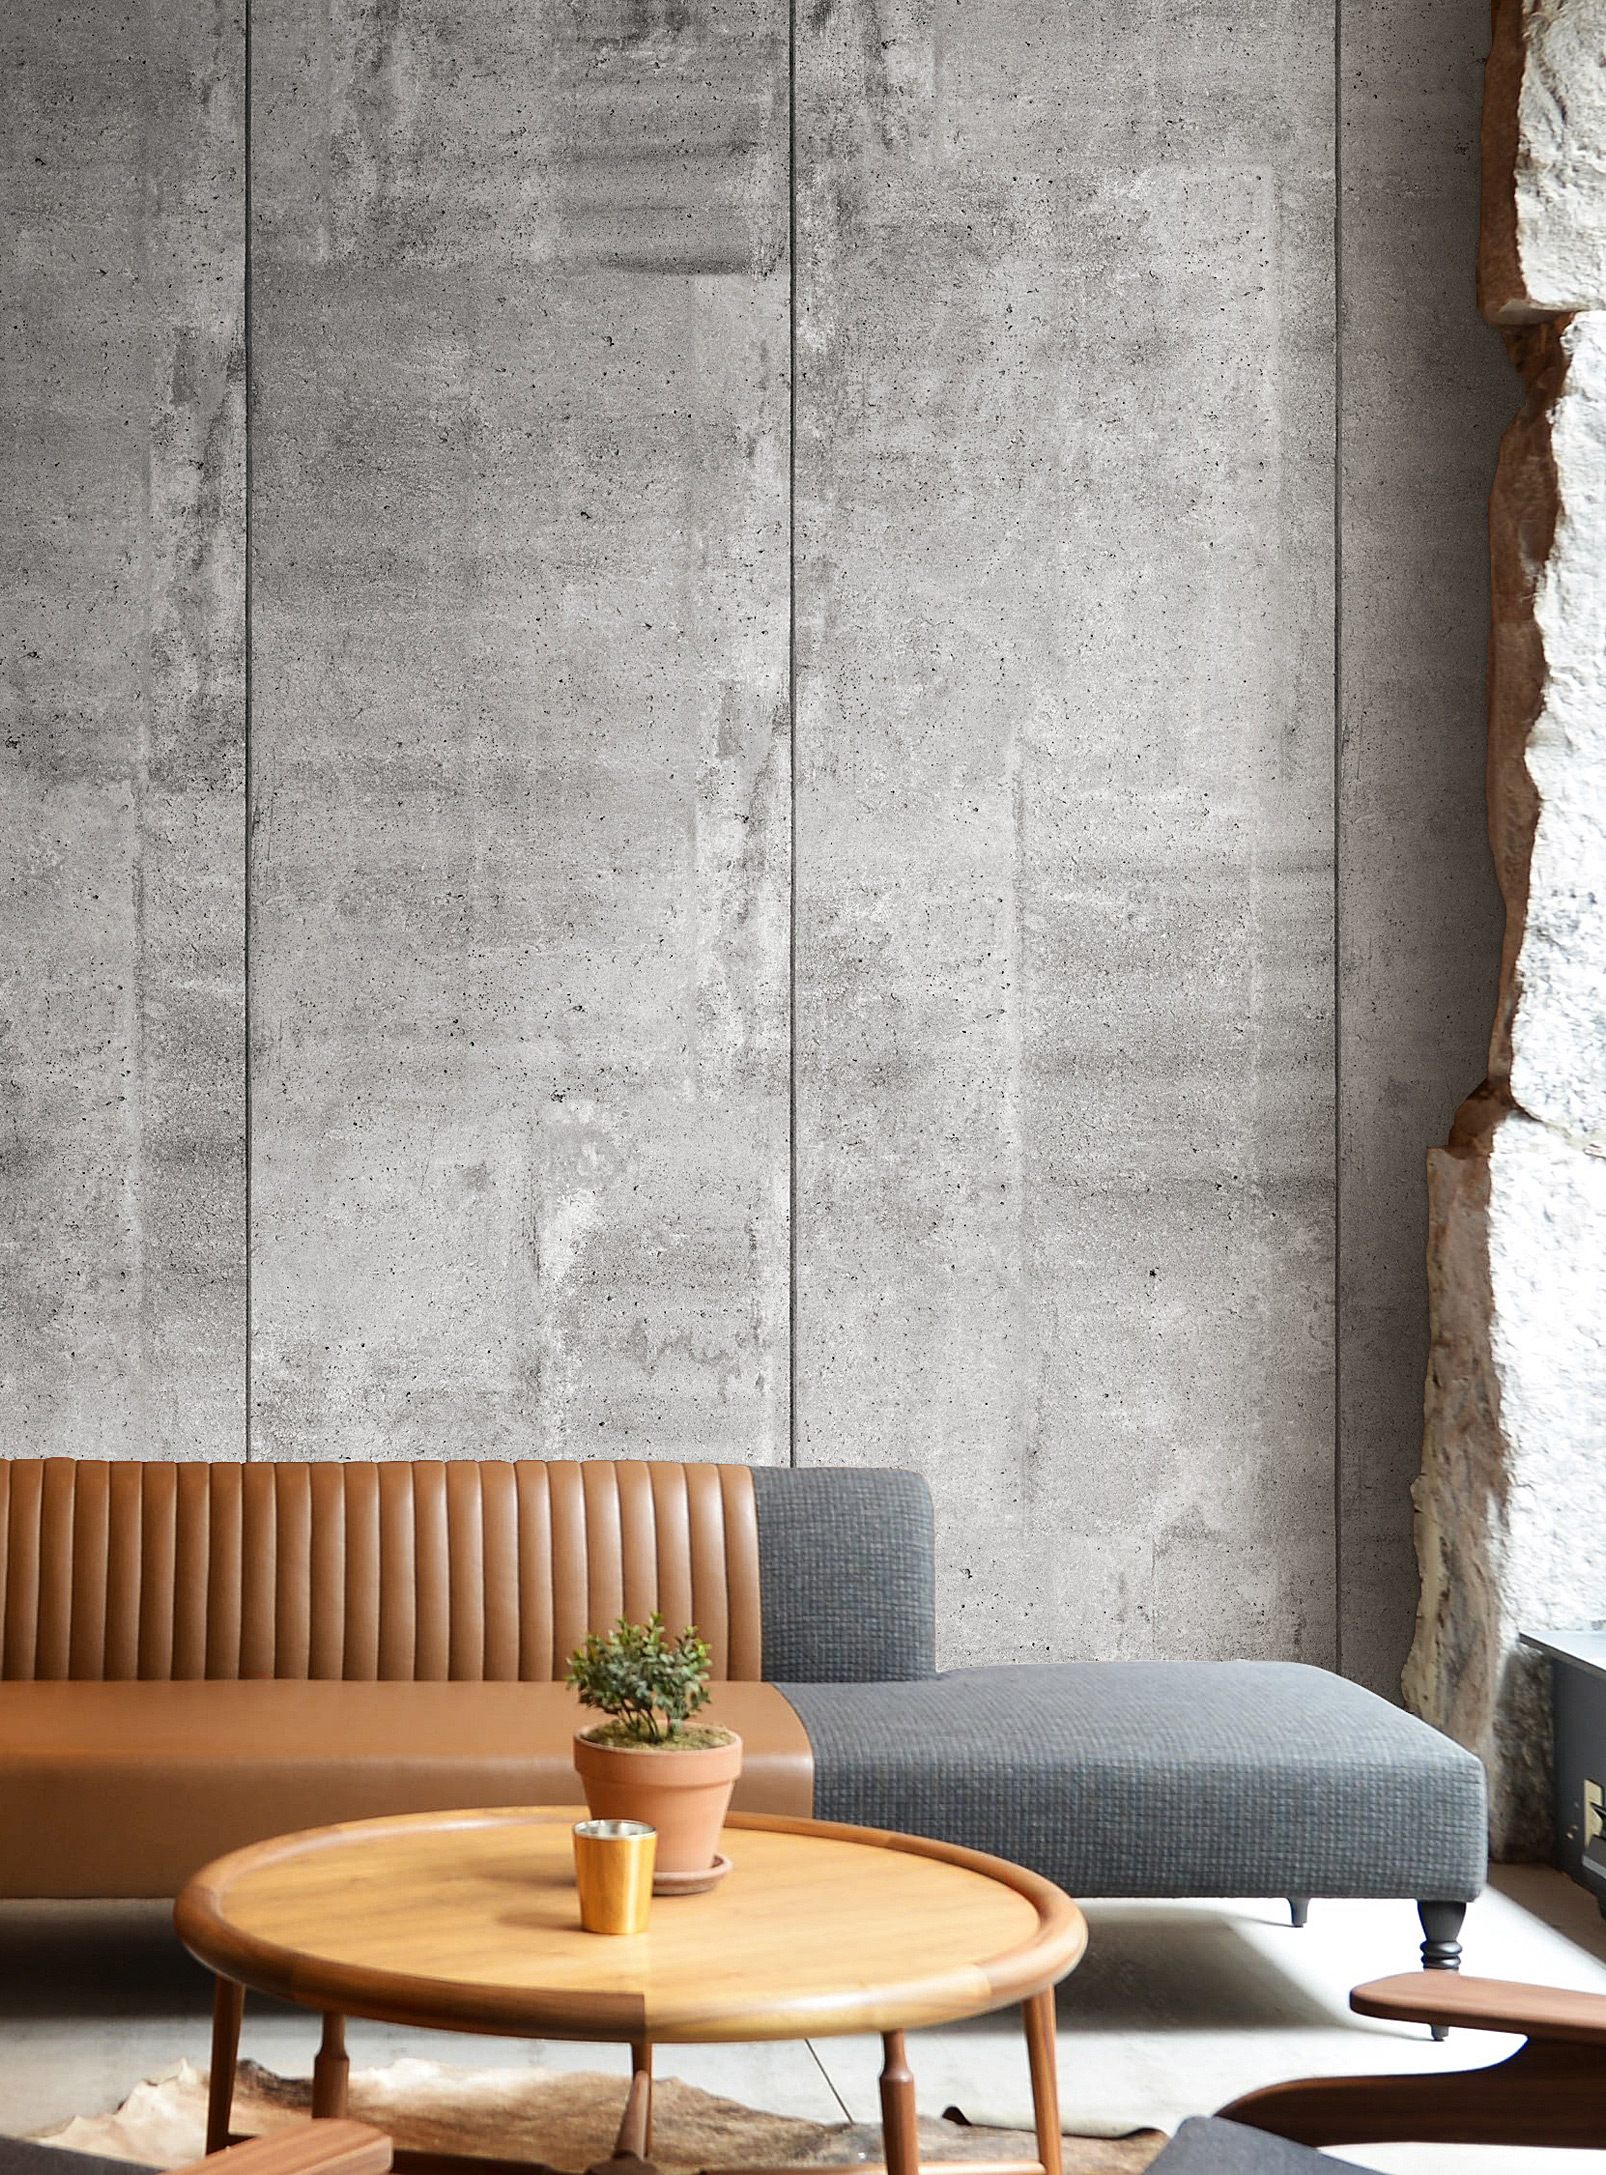 Wynil - Raw concrete wallpaper strip